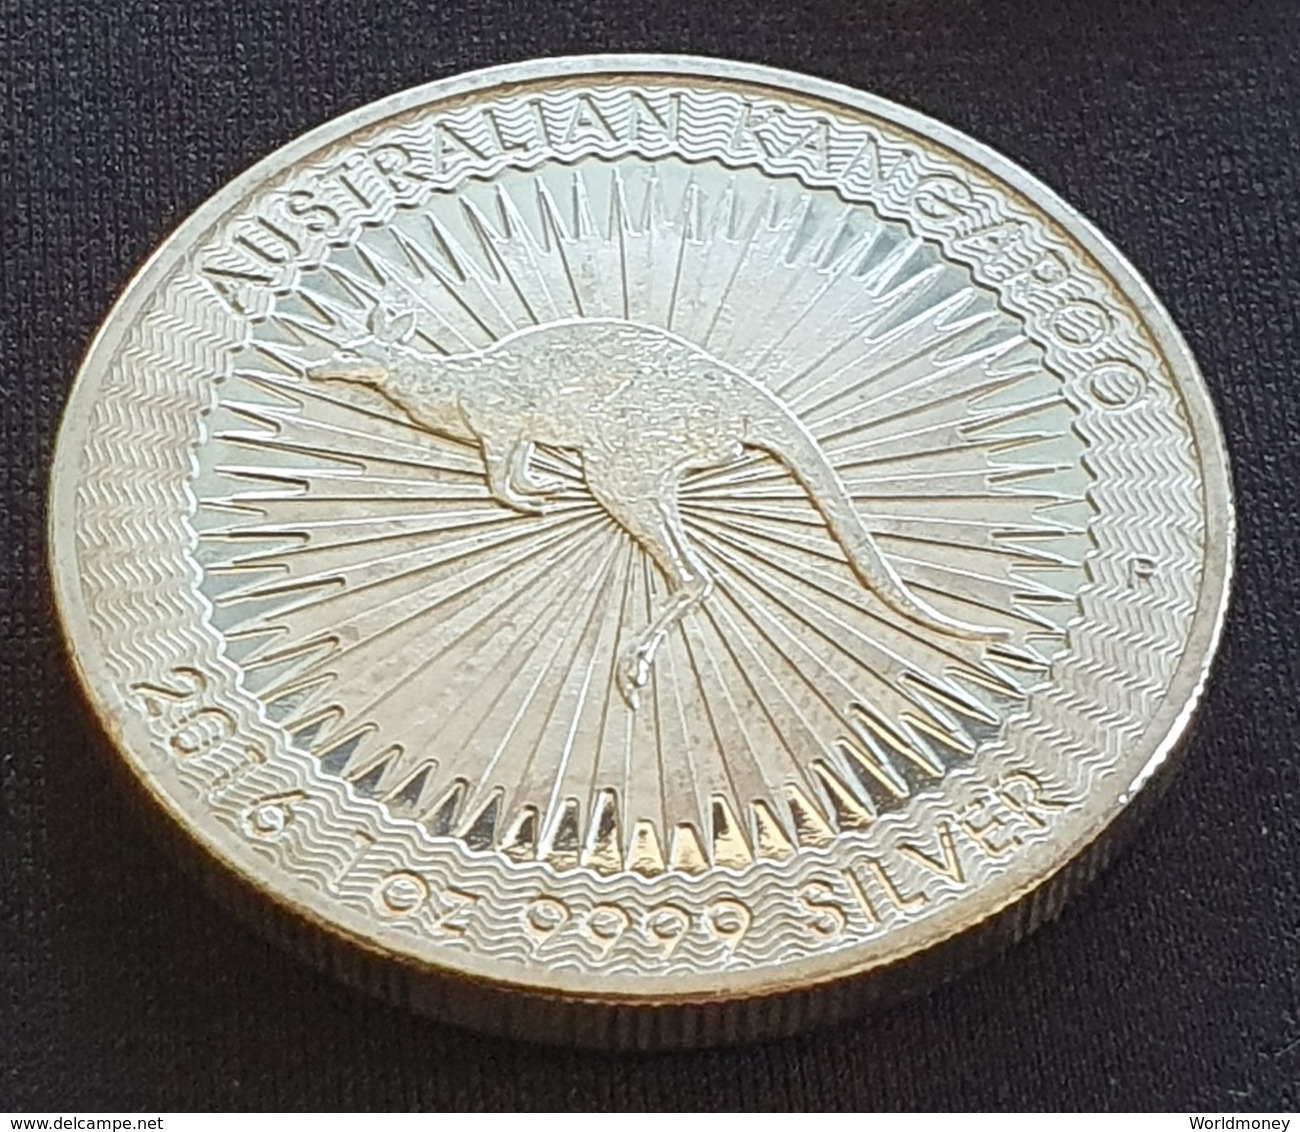 Australia 1 Dollar 2016 "Kangaroo" - Sammlungen